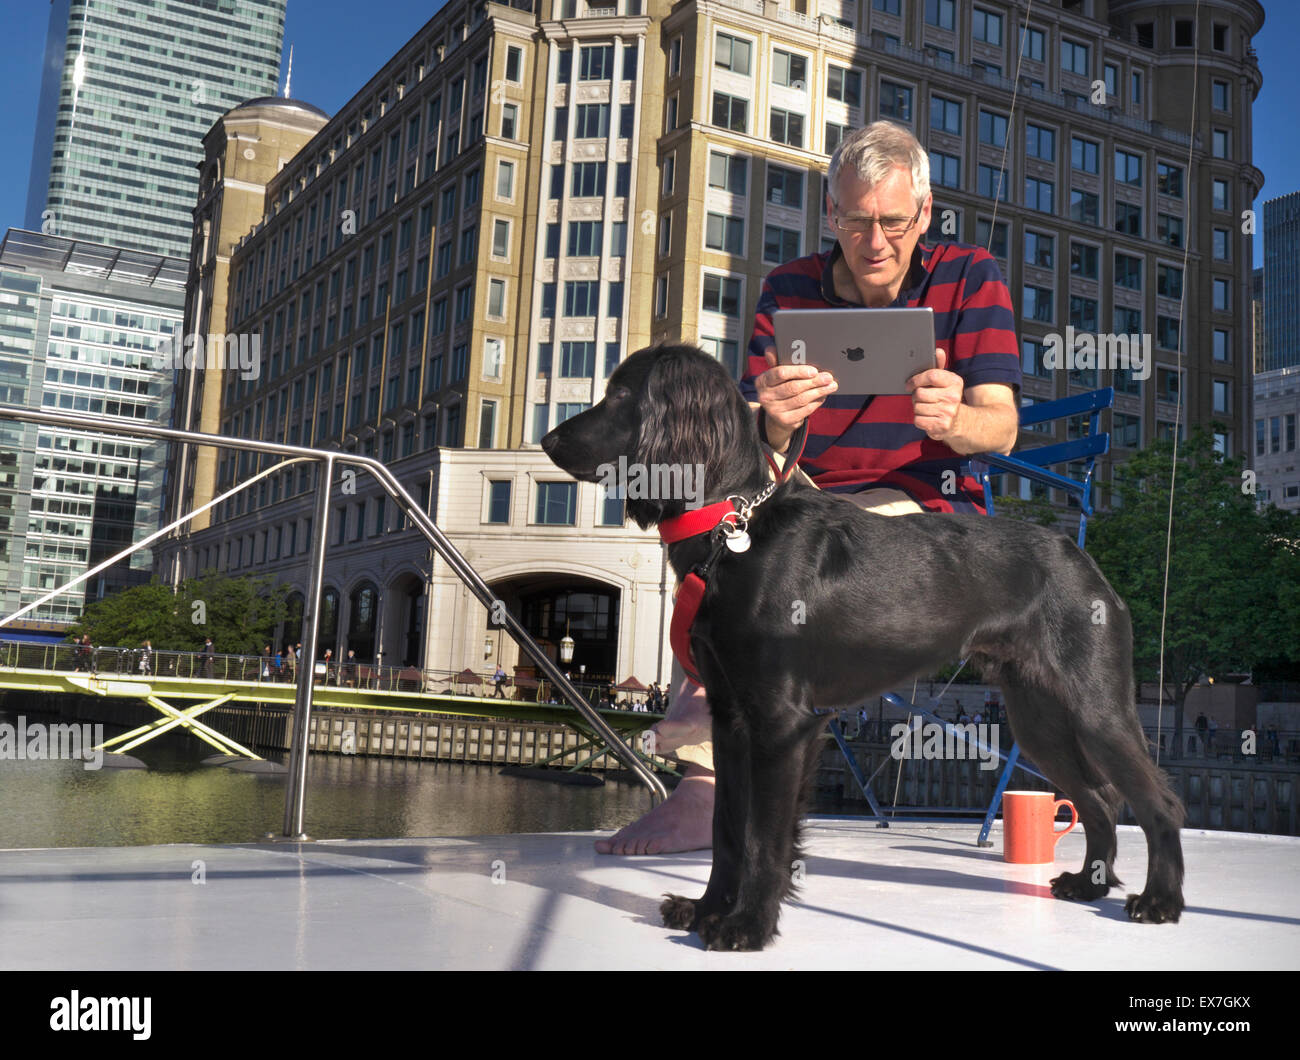 Homme mature sur barge se concentre sur la capture d'une image de son pedigree chien posant avec son ordinateur tablette iPad air Quai Canary Wharf Londres E14 Banque D'Images